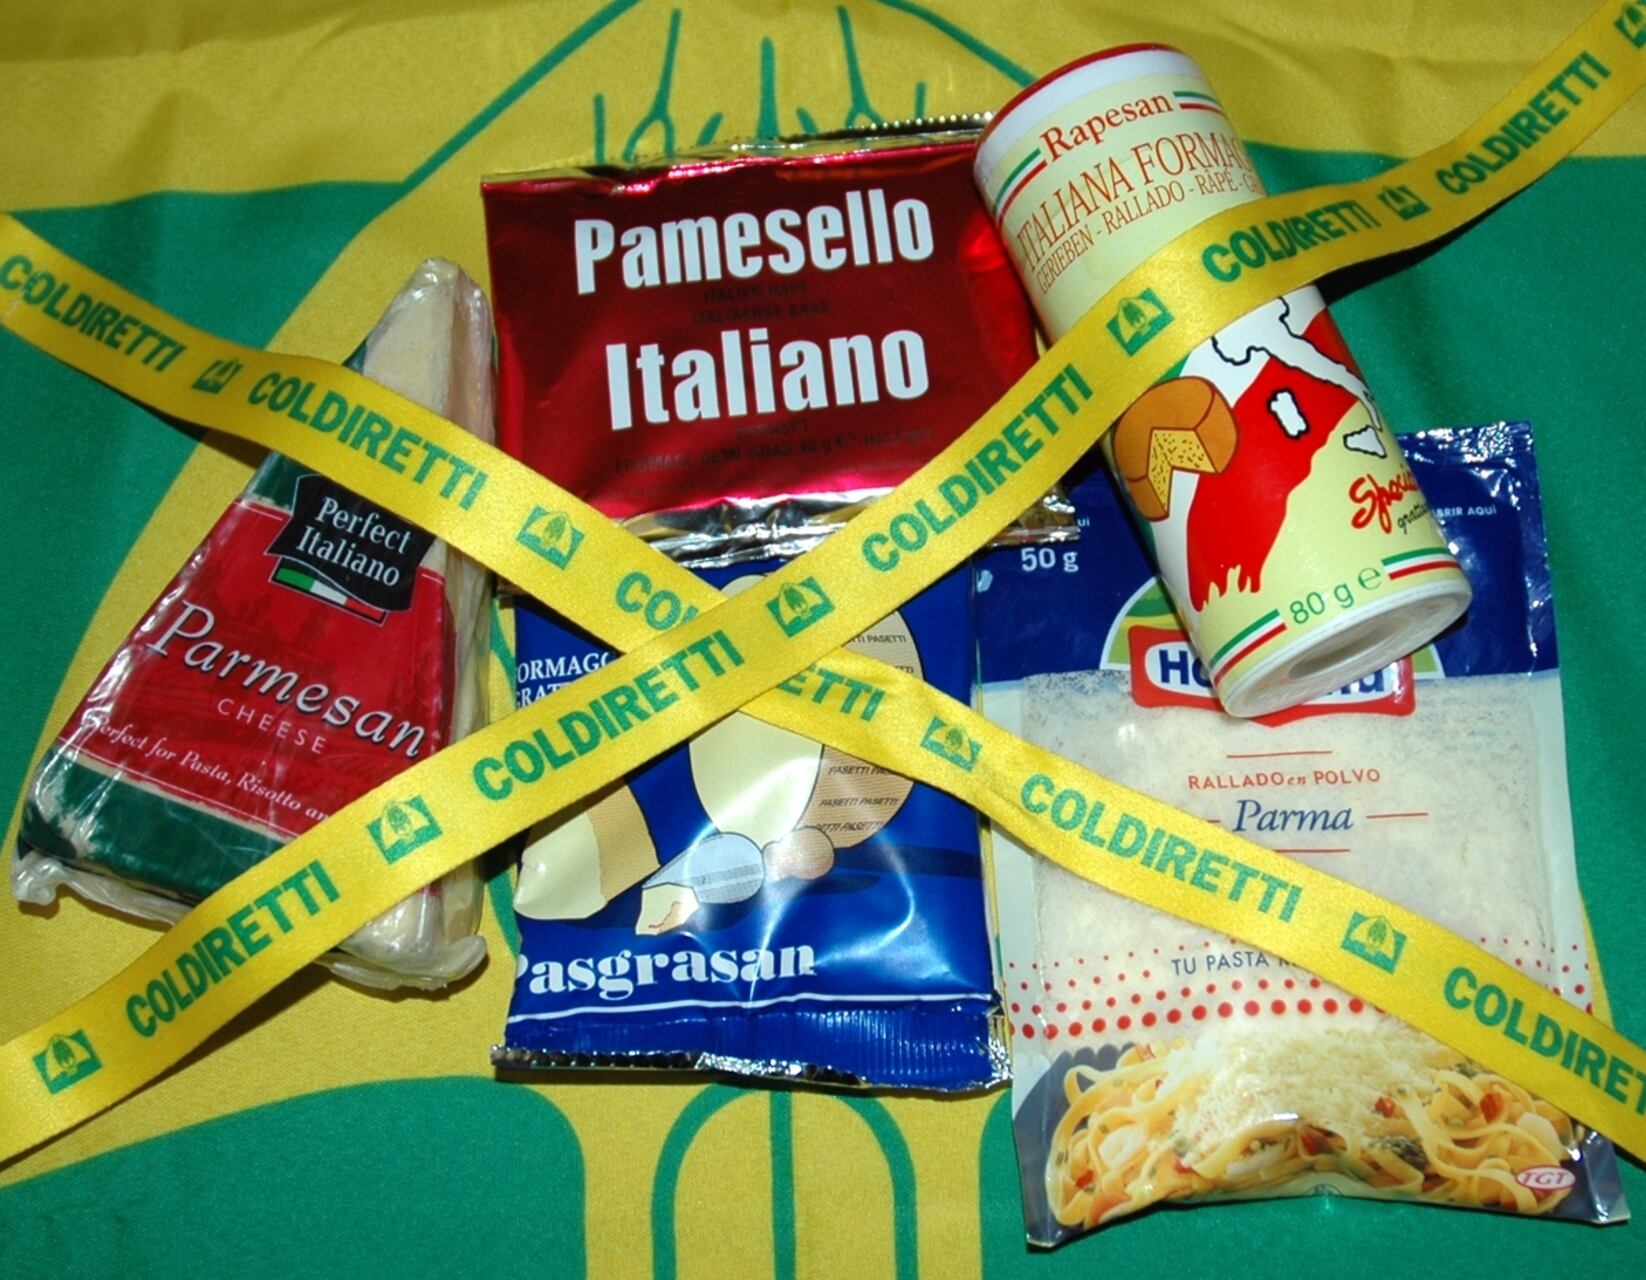 Italian sounding: le più recenti falsificazioni di cibo italiano denunciate da Coldiretti